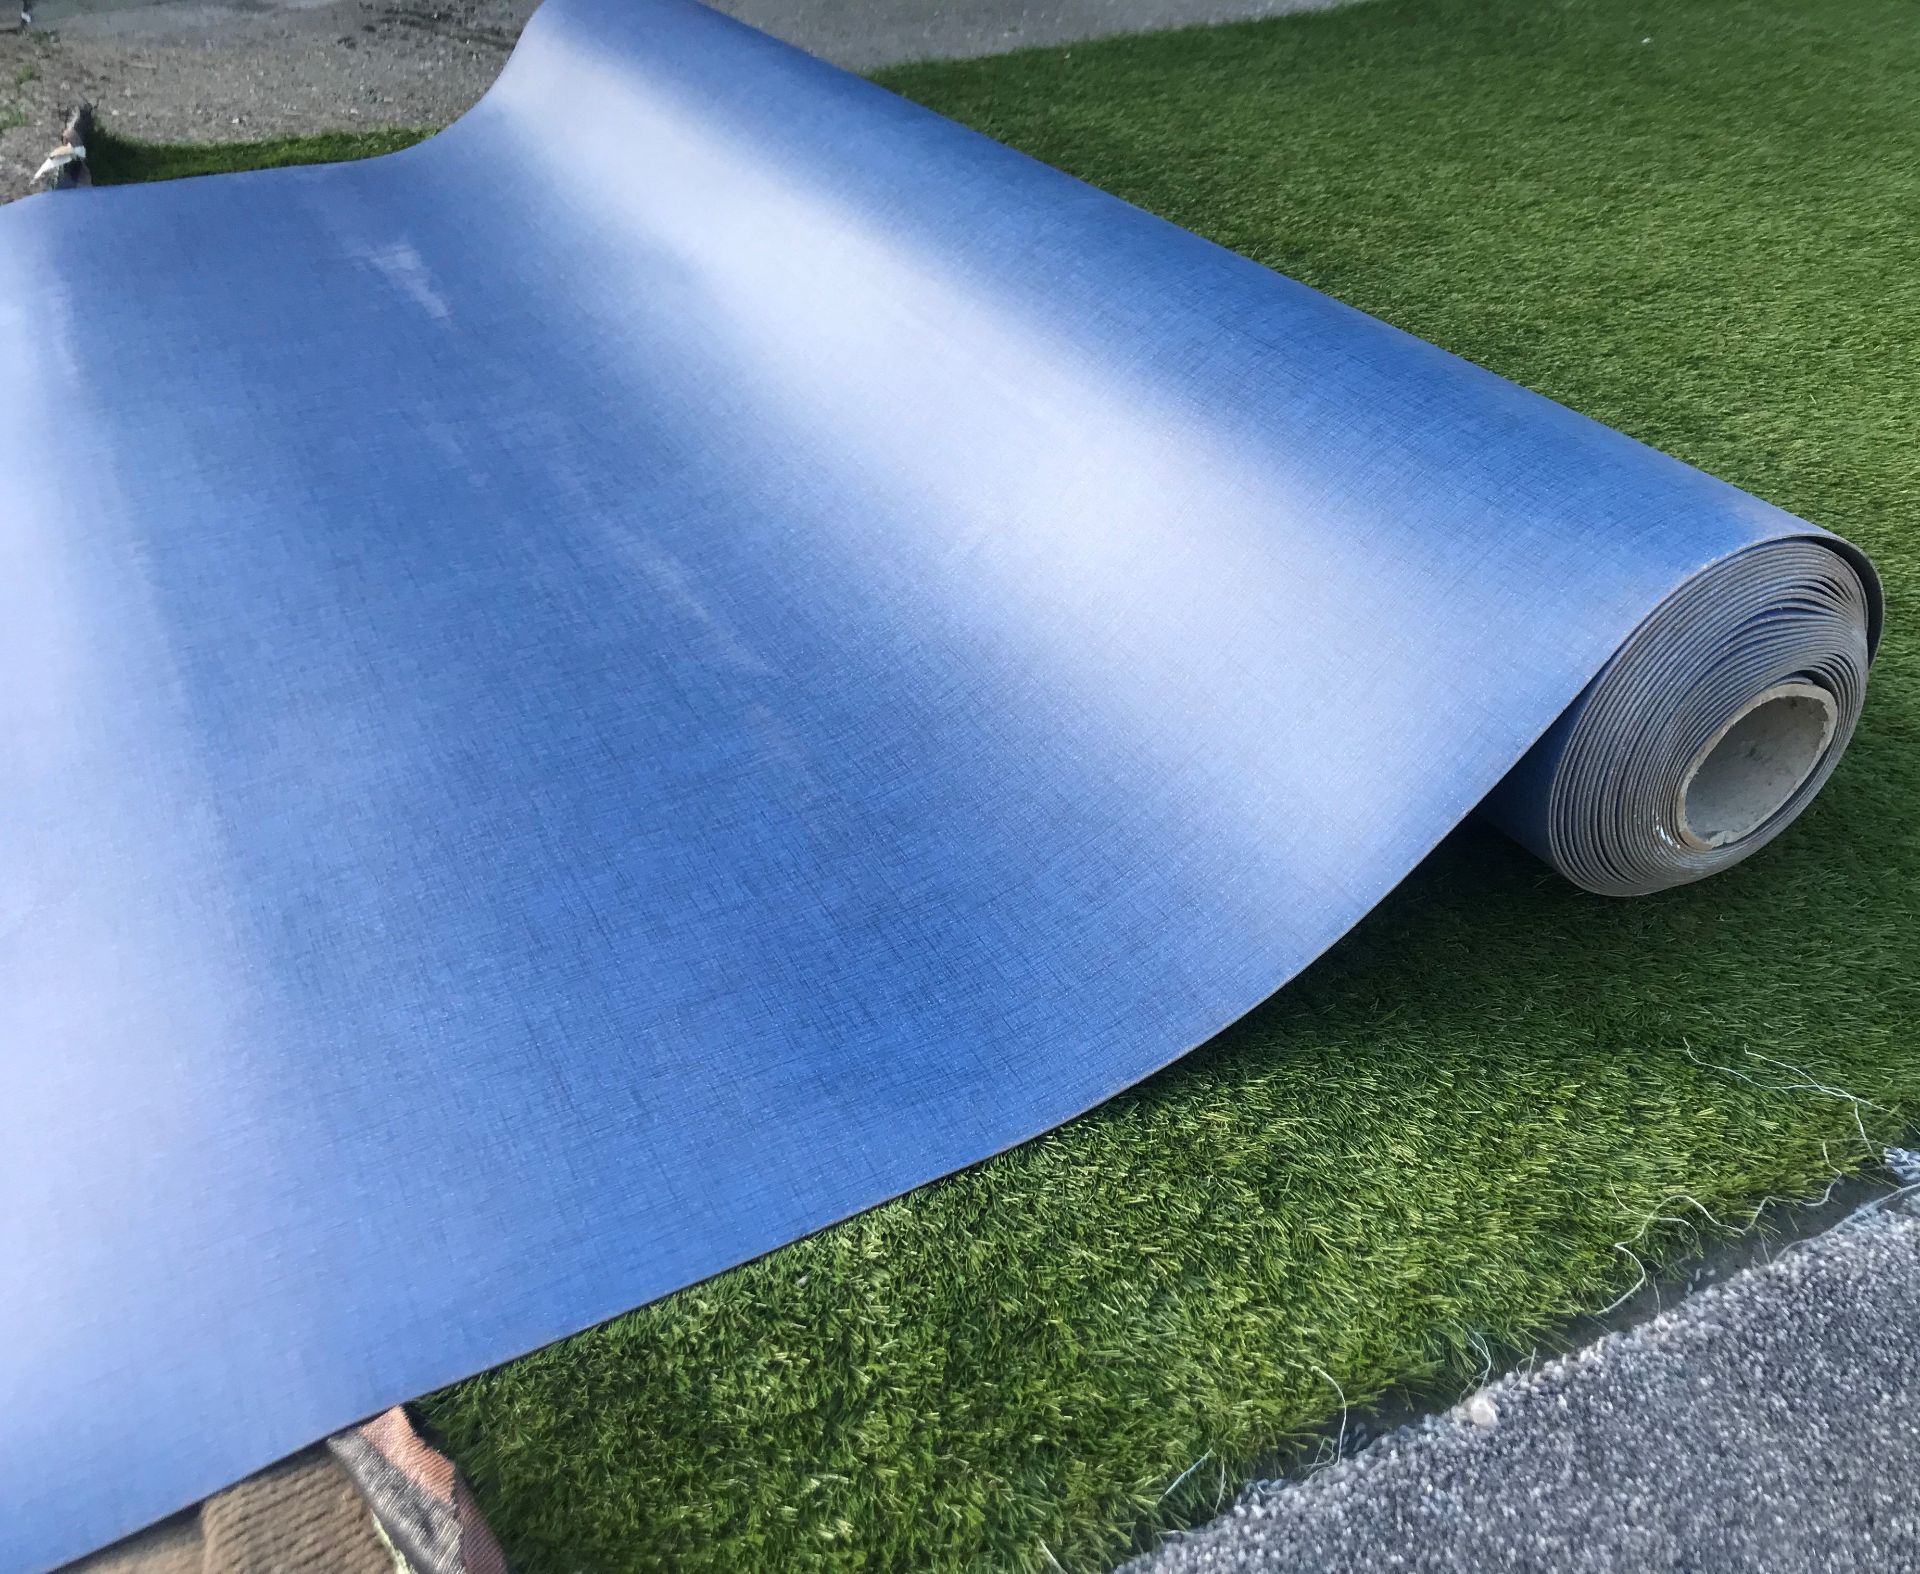 1 x GERFLOR Tarkett Commercial Grade Safety Flooring In Dark Blue -20X2M Roll - Ref: NWF004 - - Image 4 of 4